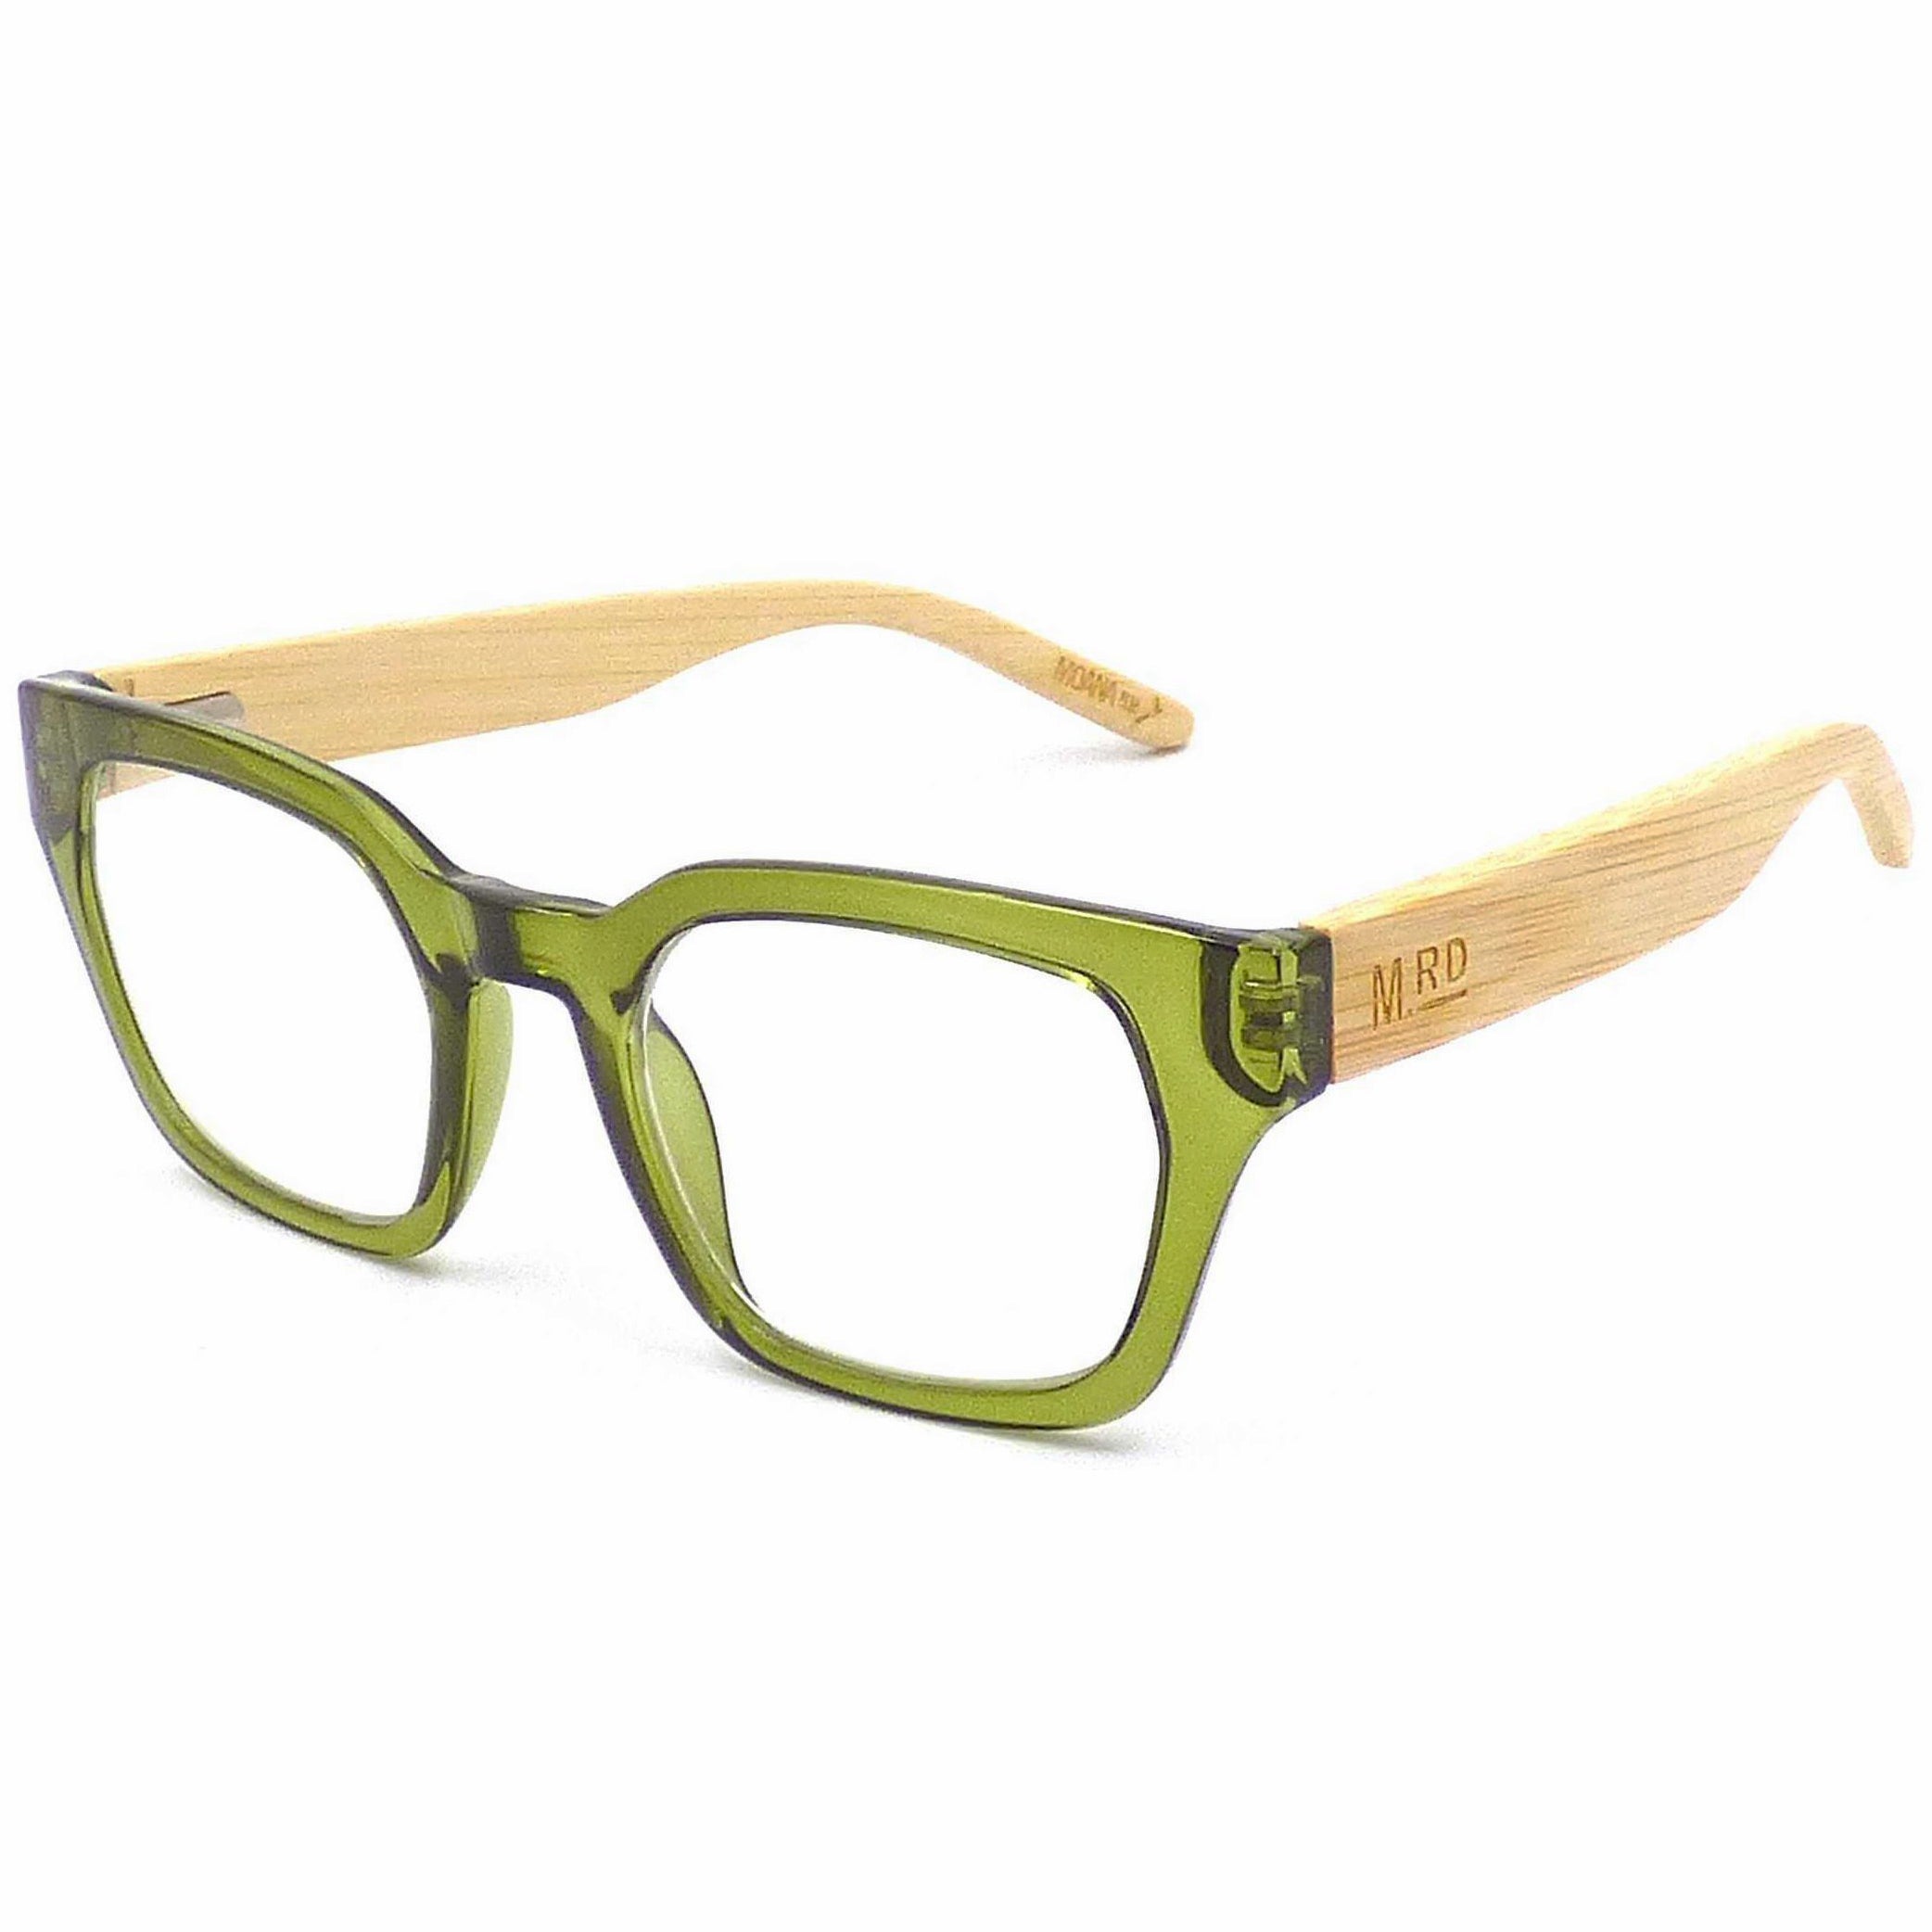 Moana Road Reading Glasses - Green +1.0